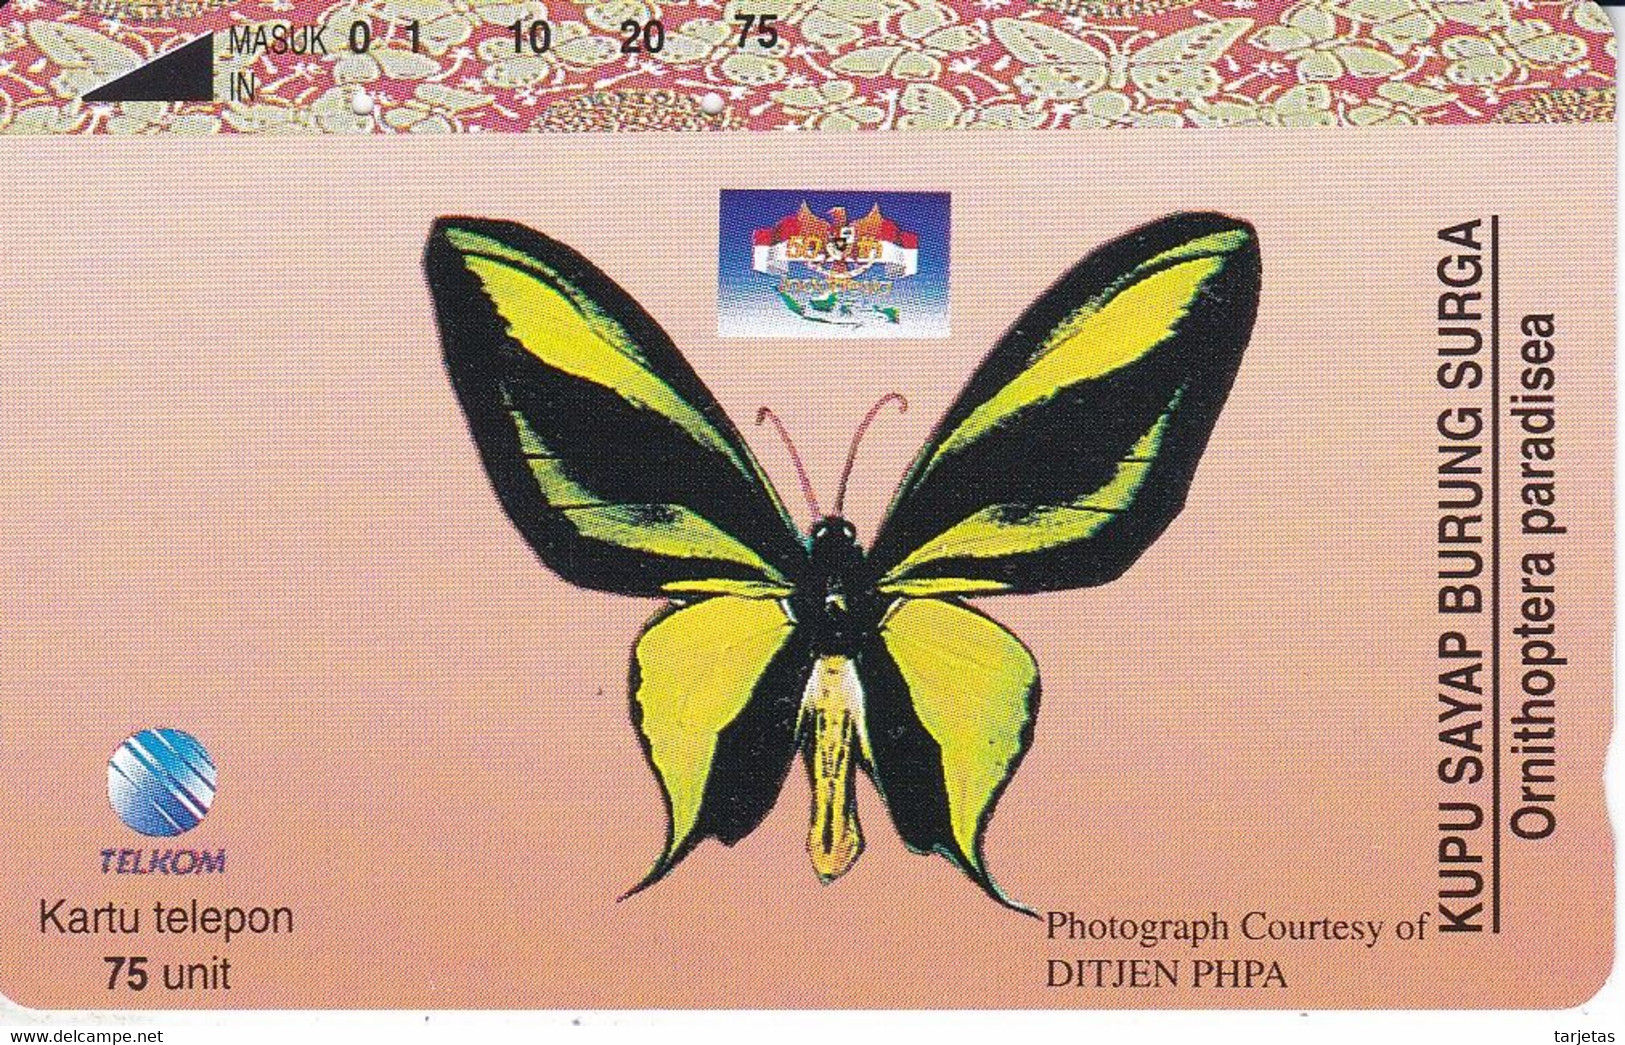 TARJETA DE INDONESIA DE UNA MARIPOSA (BUTTERFLY) - Butterflies